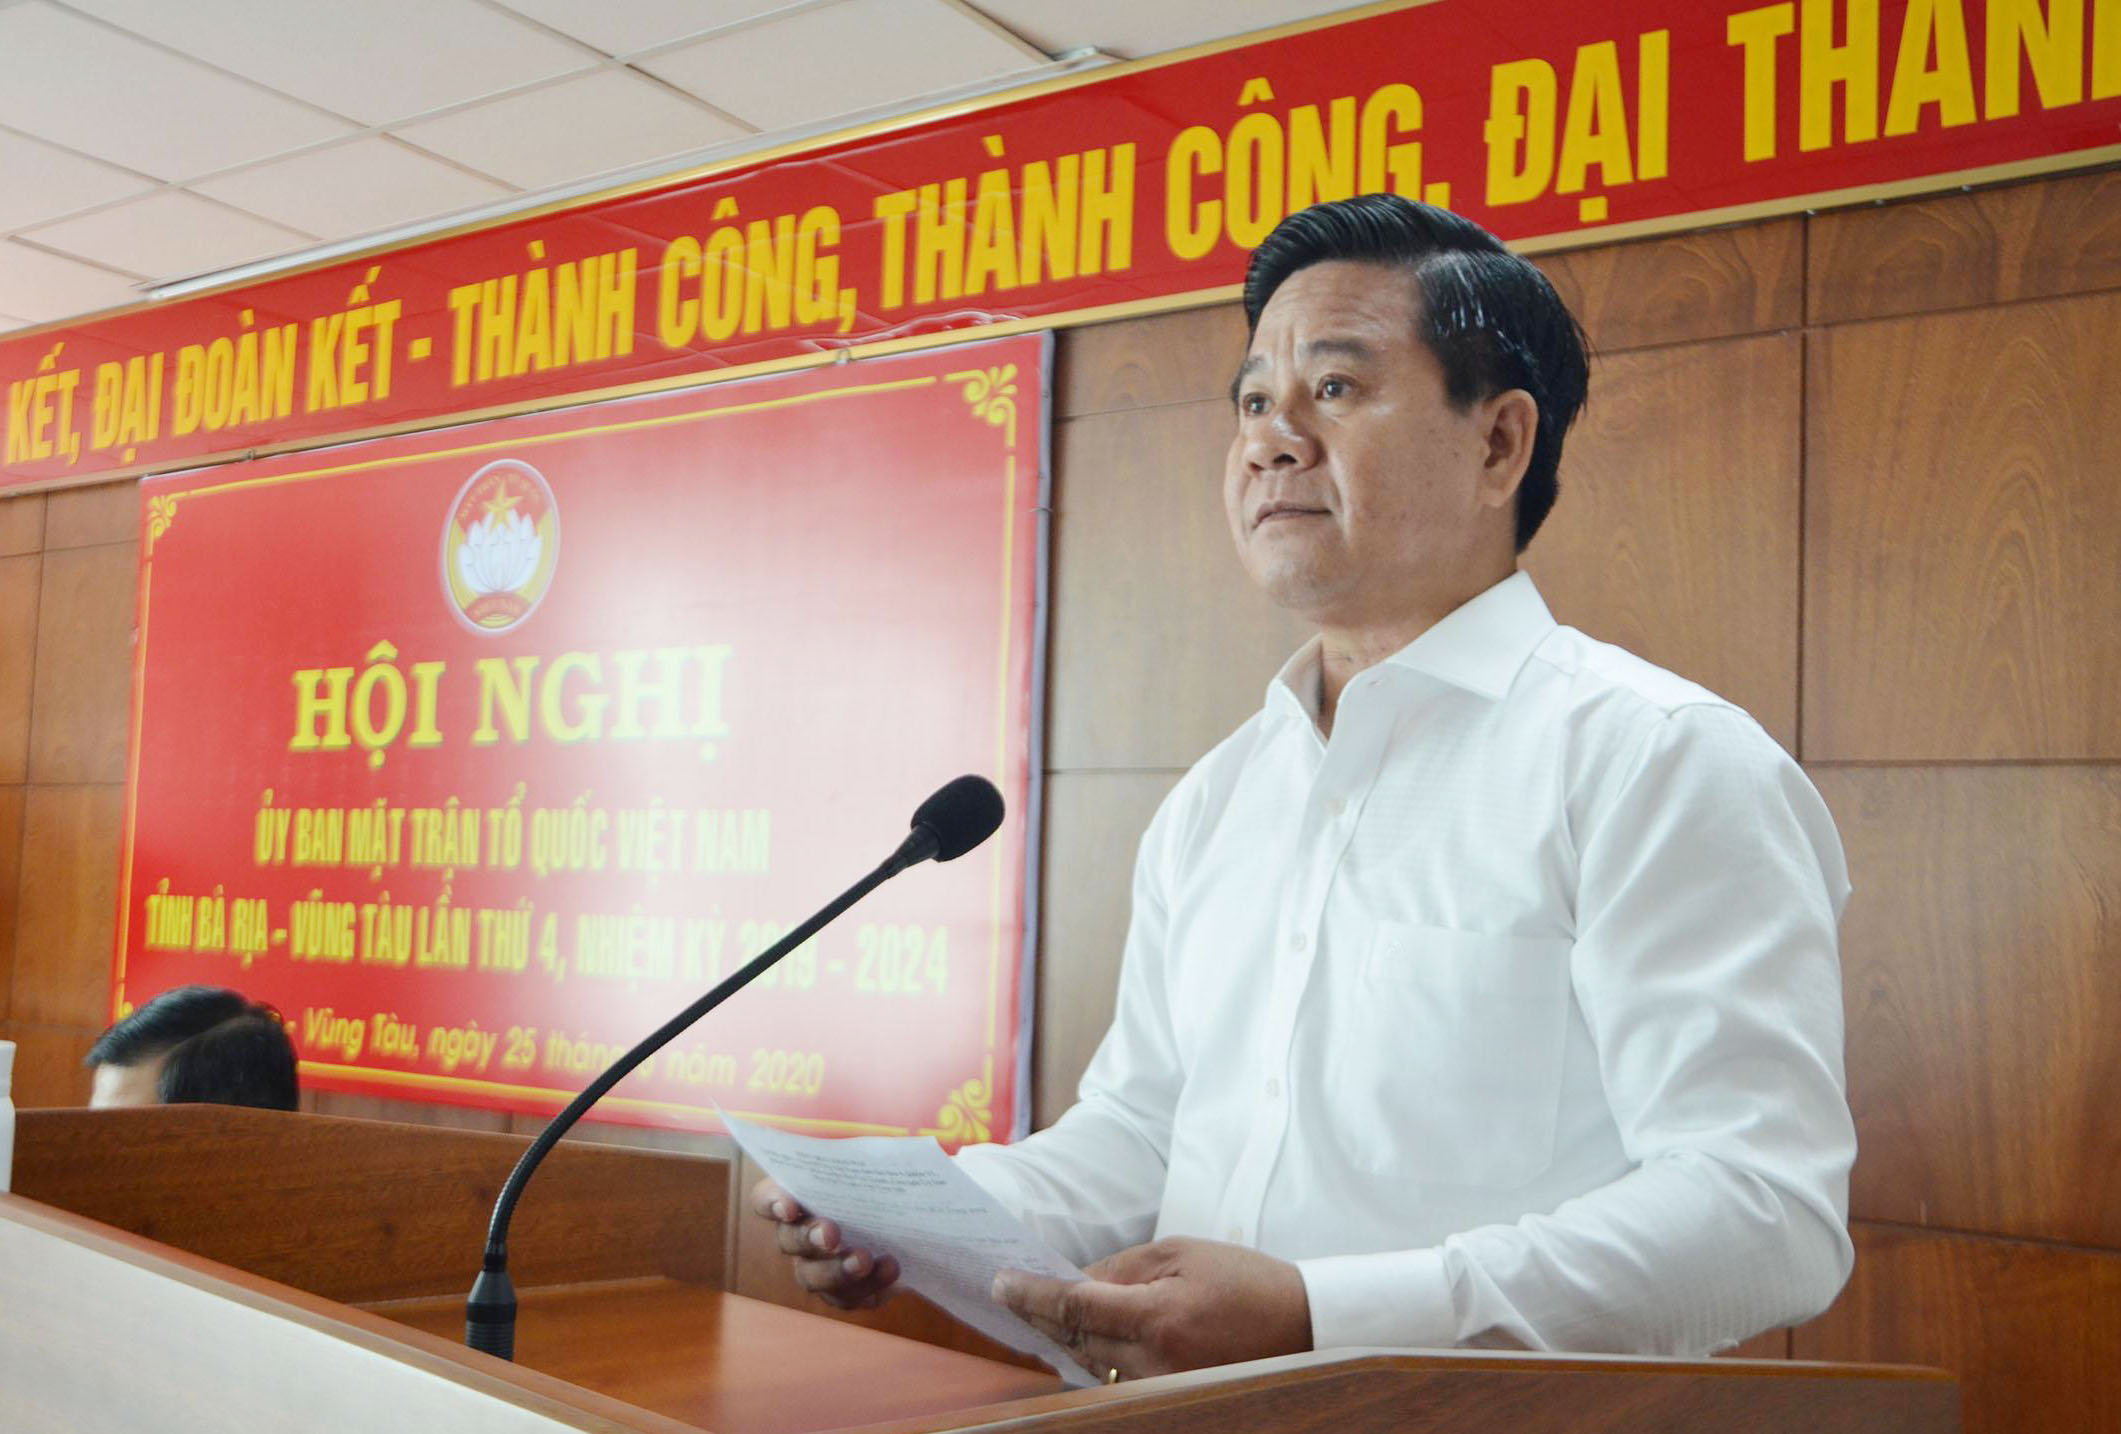 Ông Bùi Chí Thành, Ủy viên Dự khuyết Trung ương Đảng, Ủy viên Ban Thường vụ Tỉnh ủy, Chủ tịch UBMTTQVN tỉnh phát biểu khai mạc hội nghị.